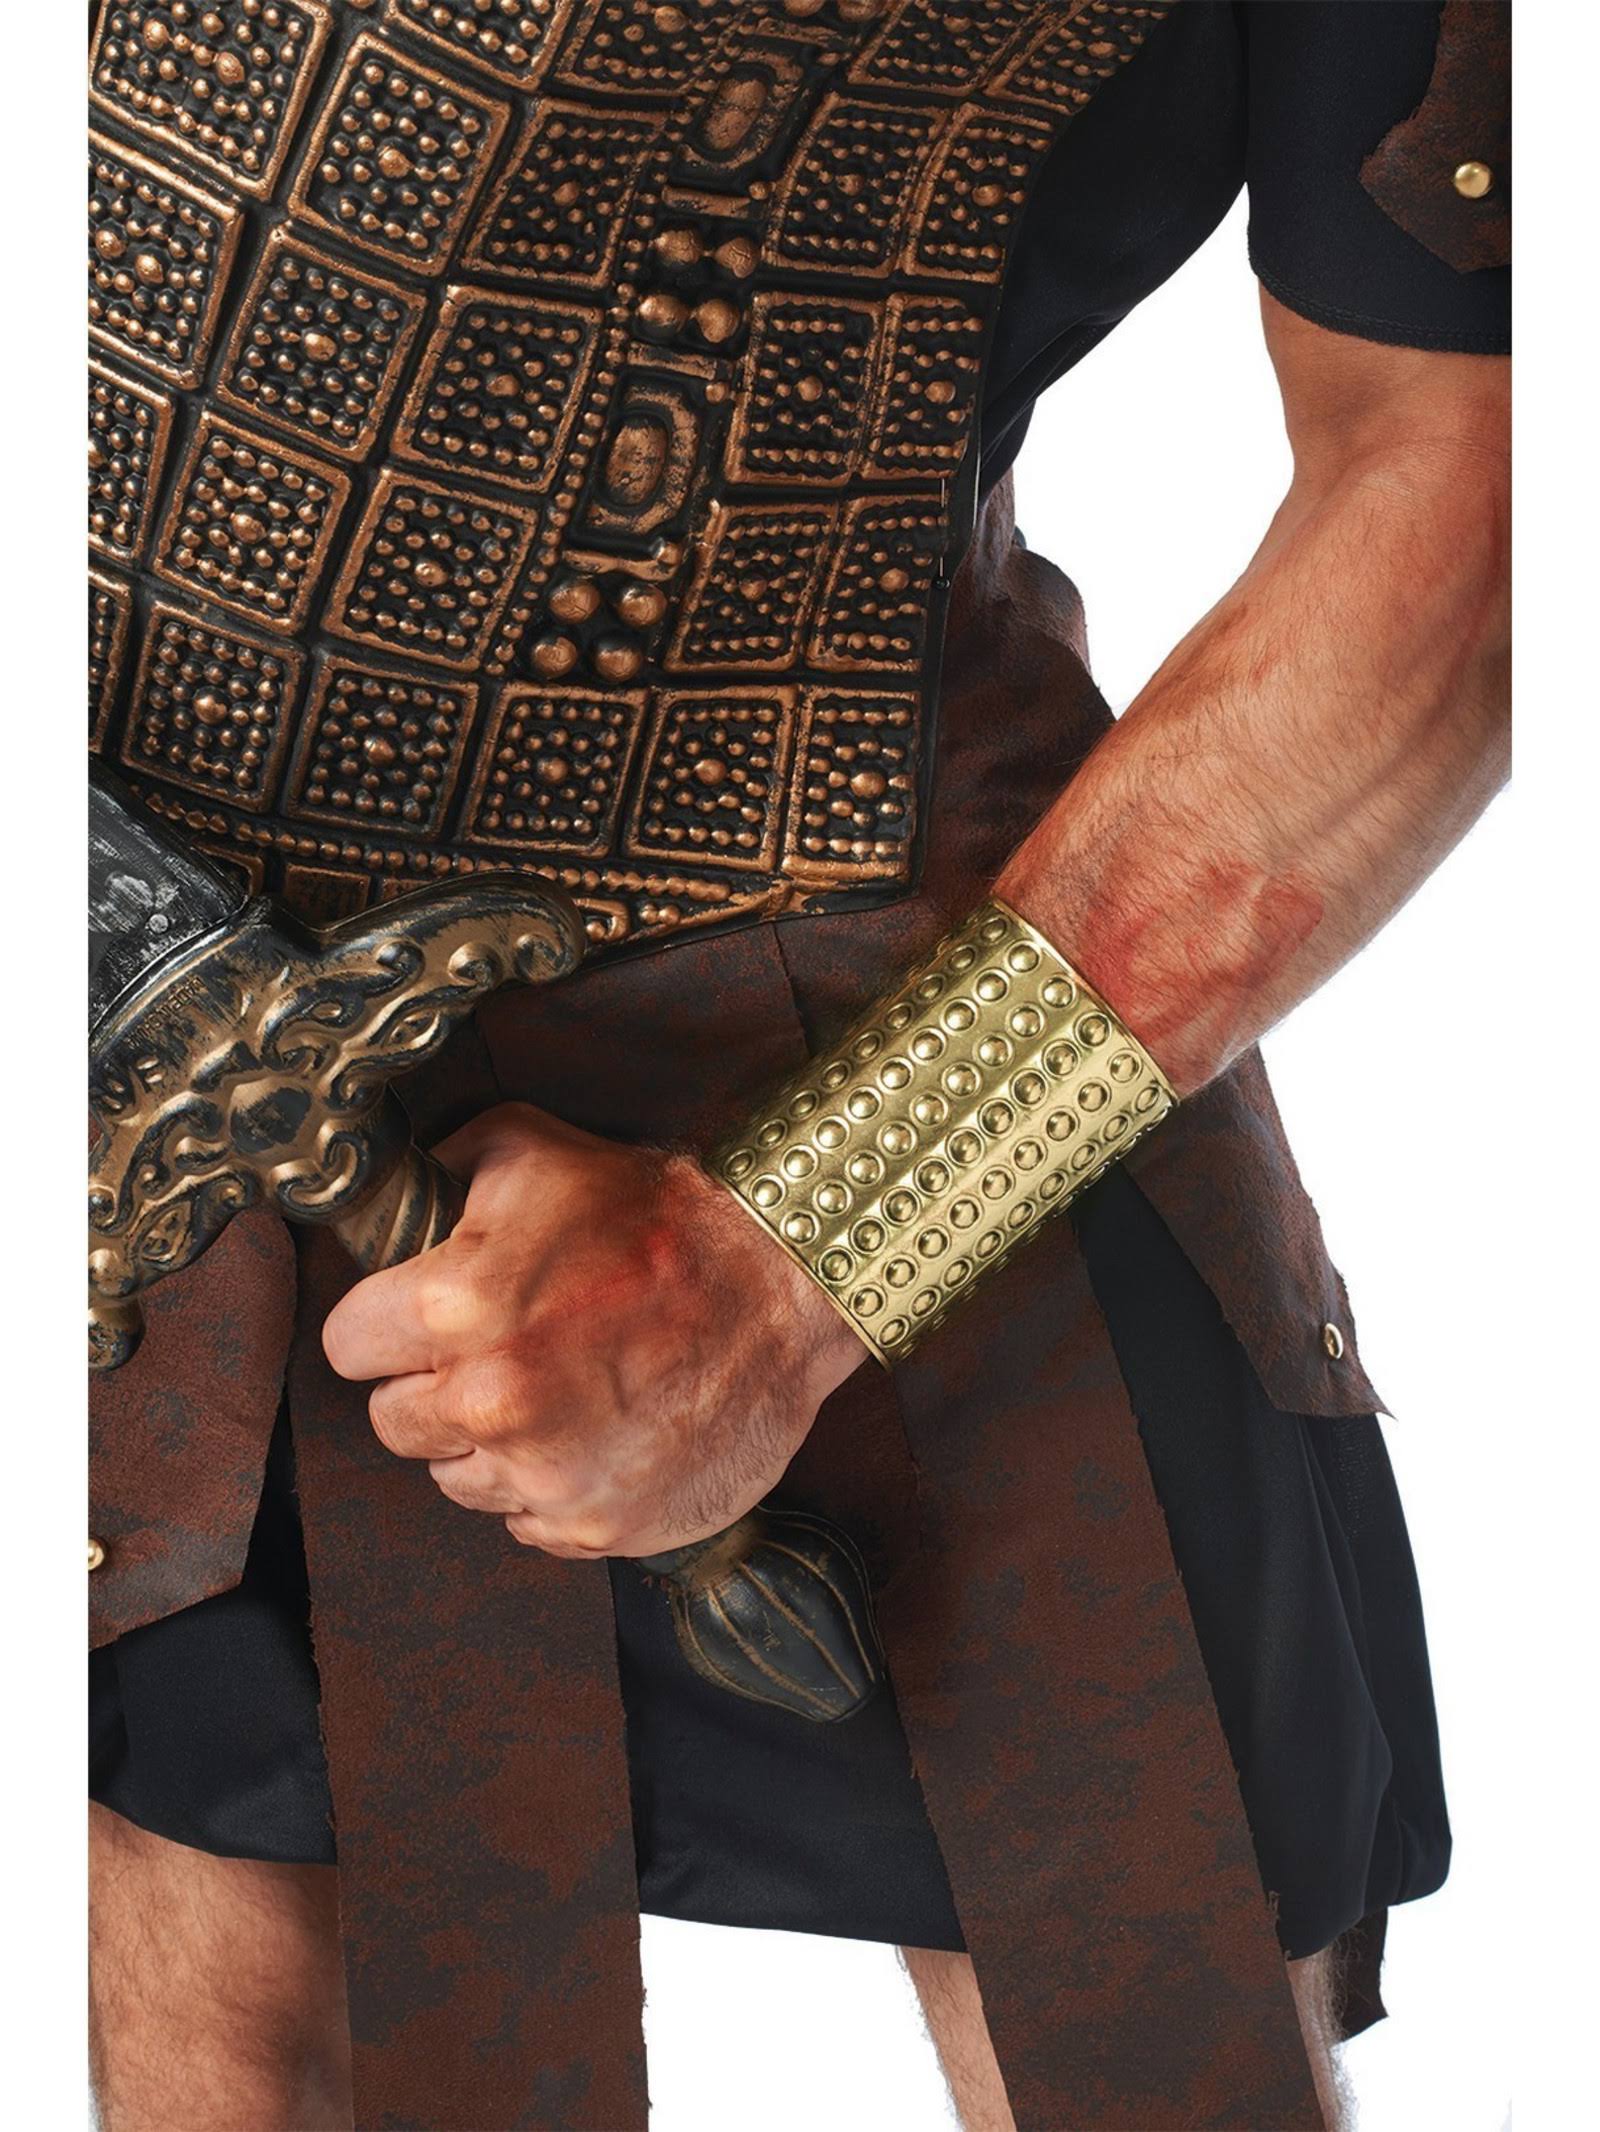 Costume Culture Men's Gladiator Circle Wrist Cuff - Gold, One Size